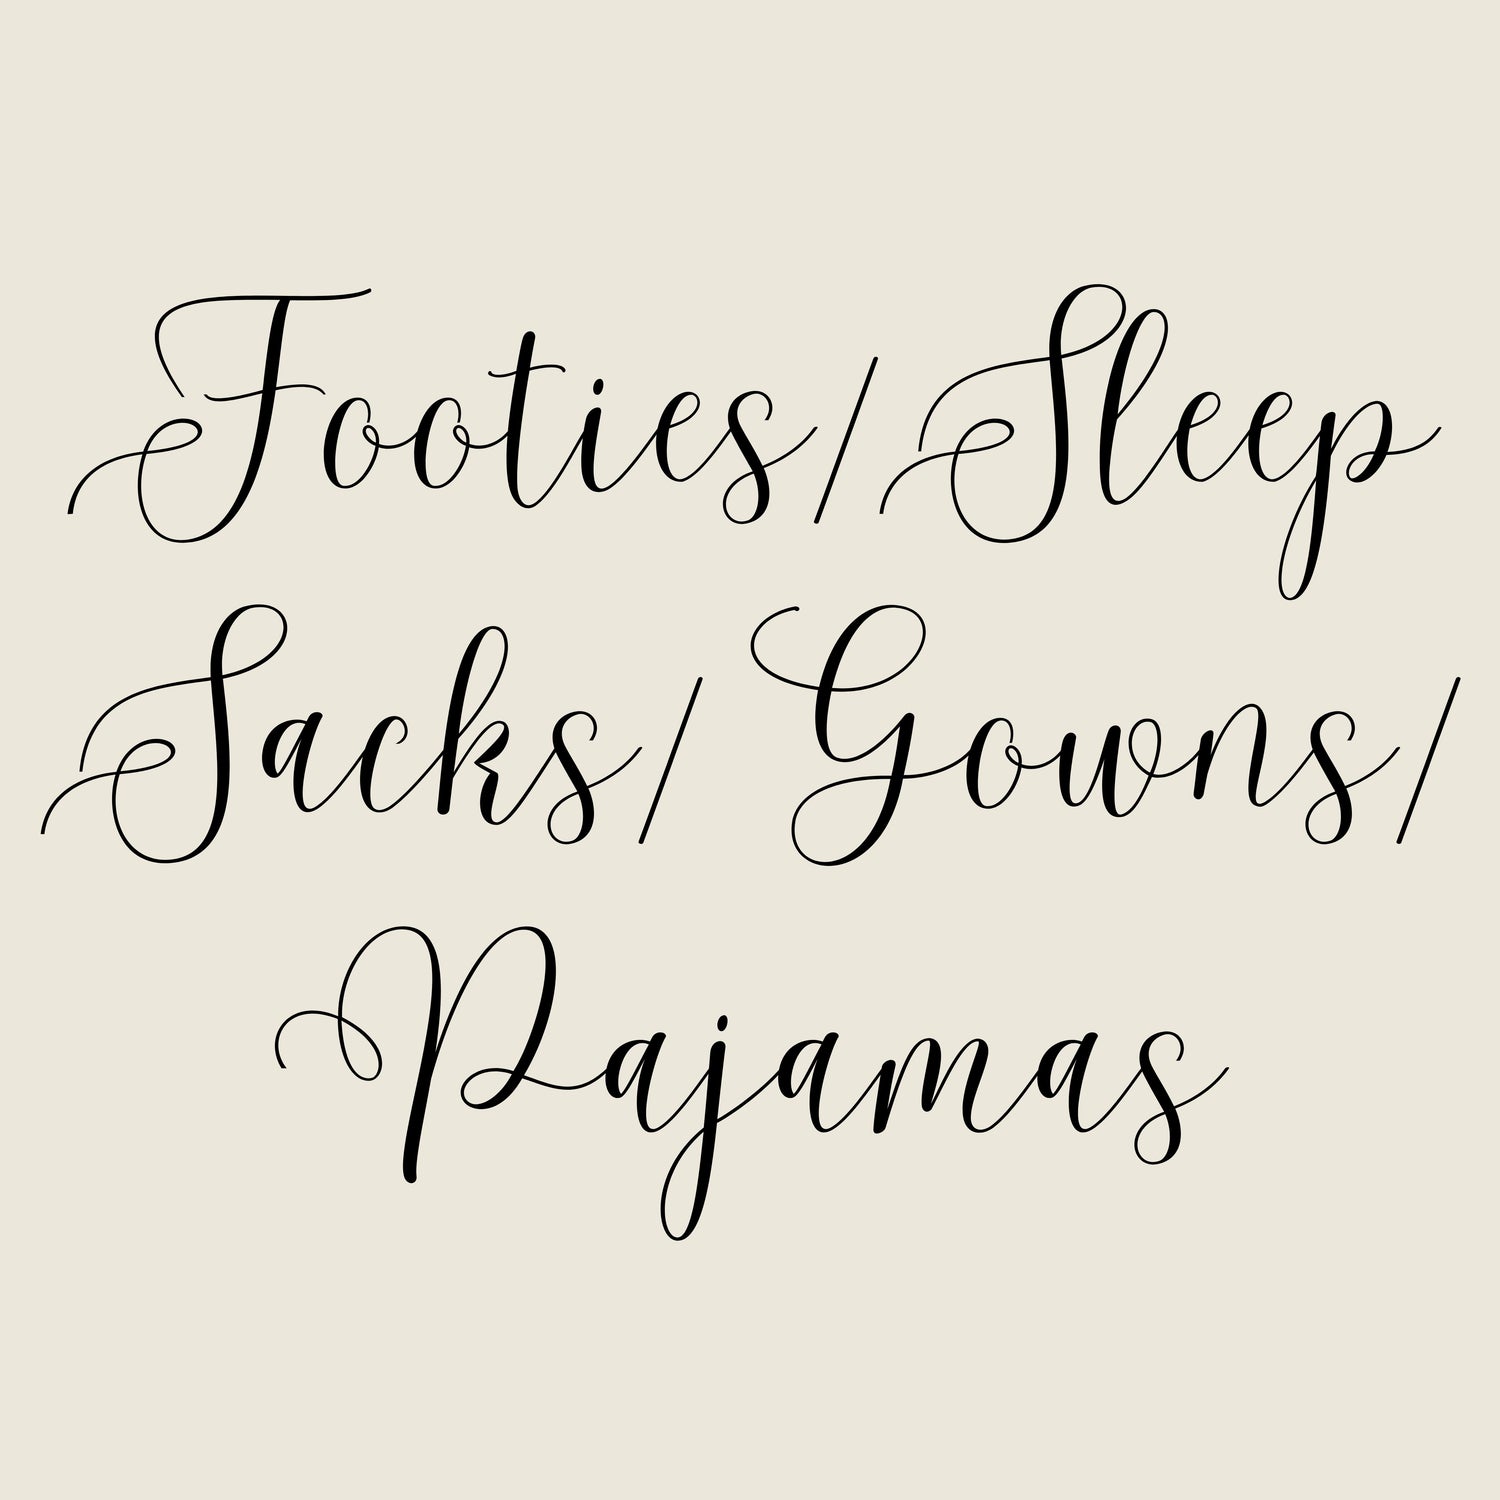 Footies/ Sleep Sacks/ Gowns/ Pajamas